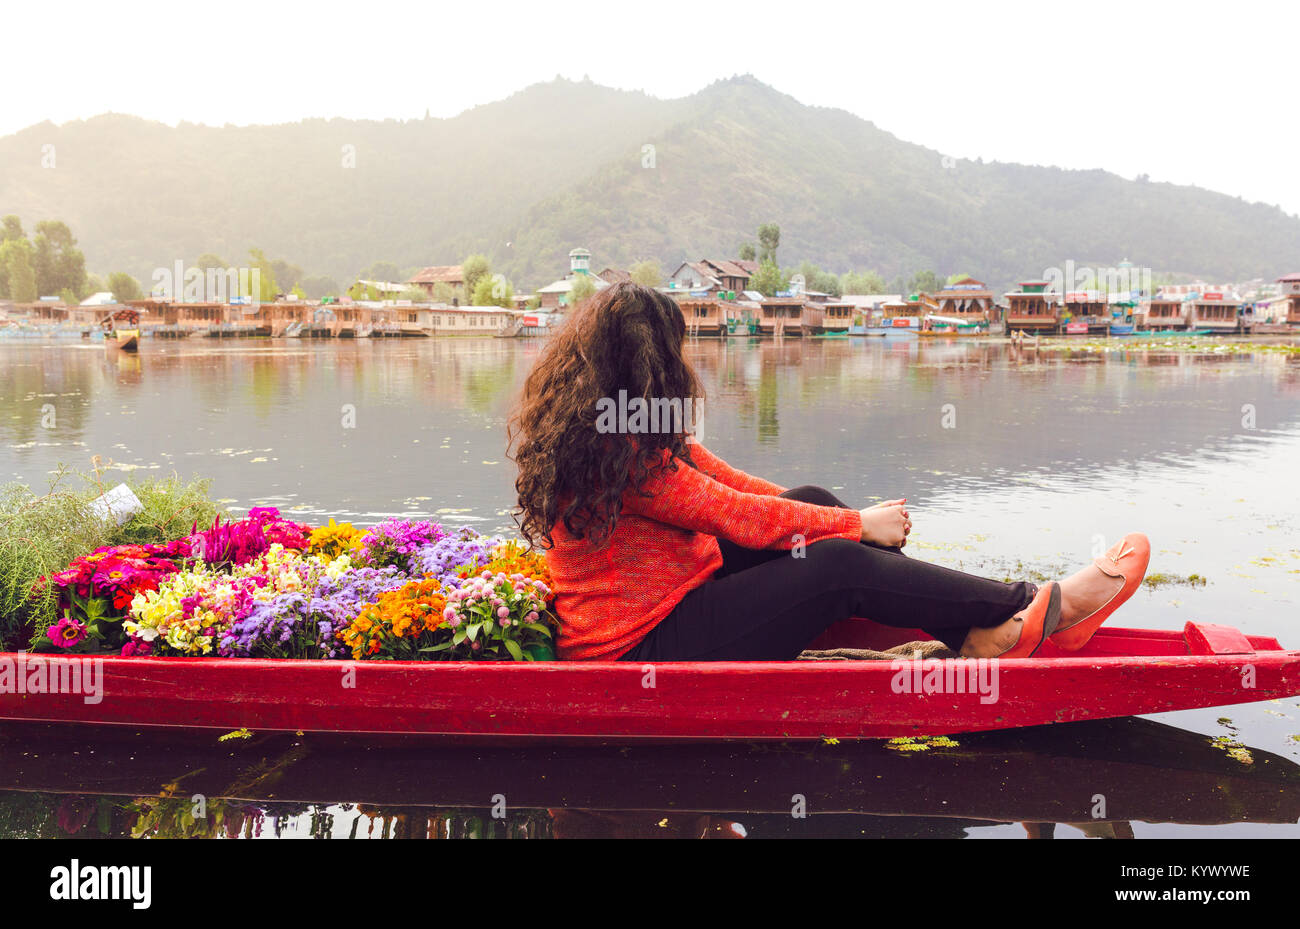 Un plein de Shikhara fleurs colorées avec une seule fille ou la femme en voyage. Fille de randonnée sur le lac Dal, Srinagar, Inde, Kasmir. sunrise, scène animée Banque D'Images